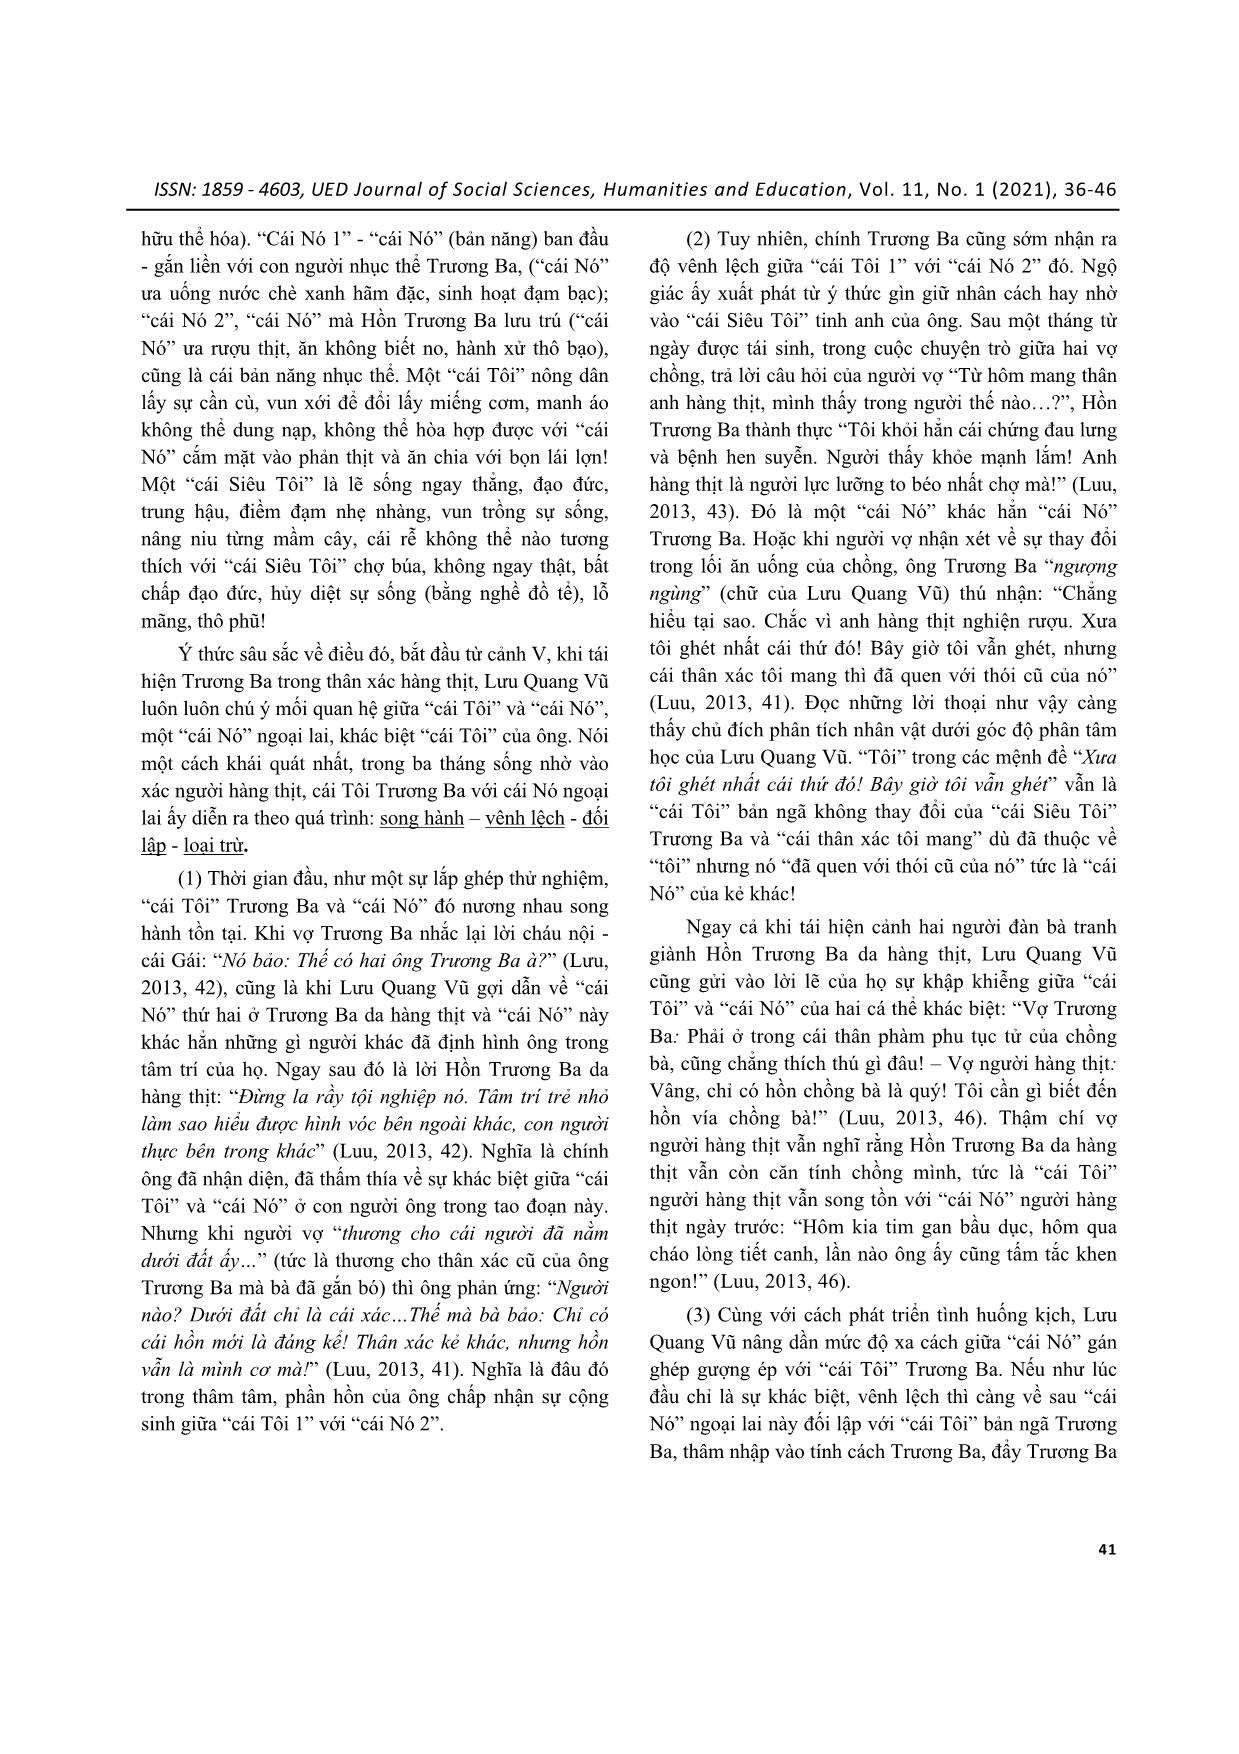 Ý tưởng triết luận và sáng tạo nghệ thuật của Lưu Quang Vũ trong kịch bản “Hồn Trương Ba da hàng thịt” trang 6